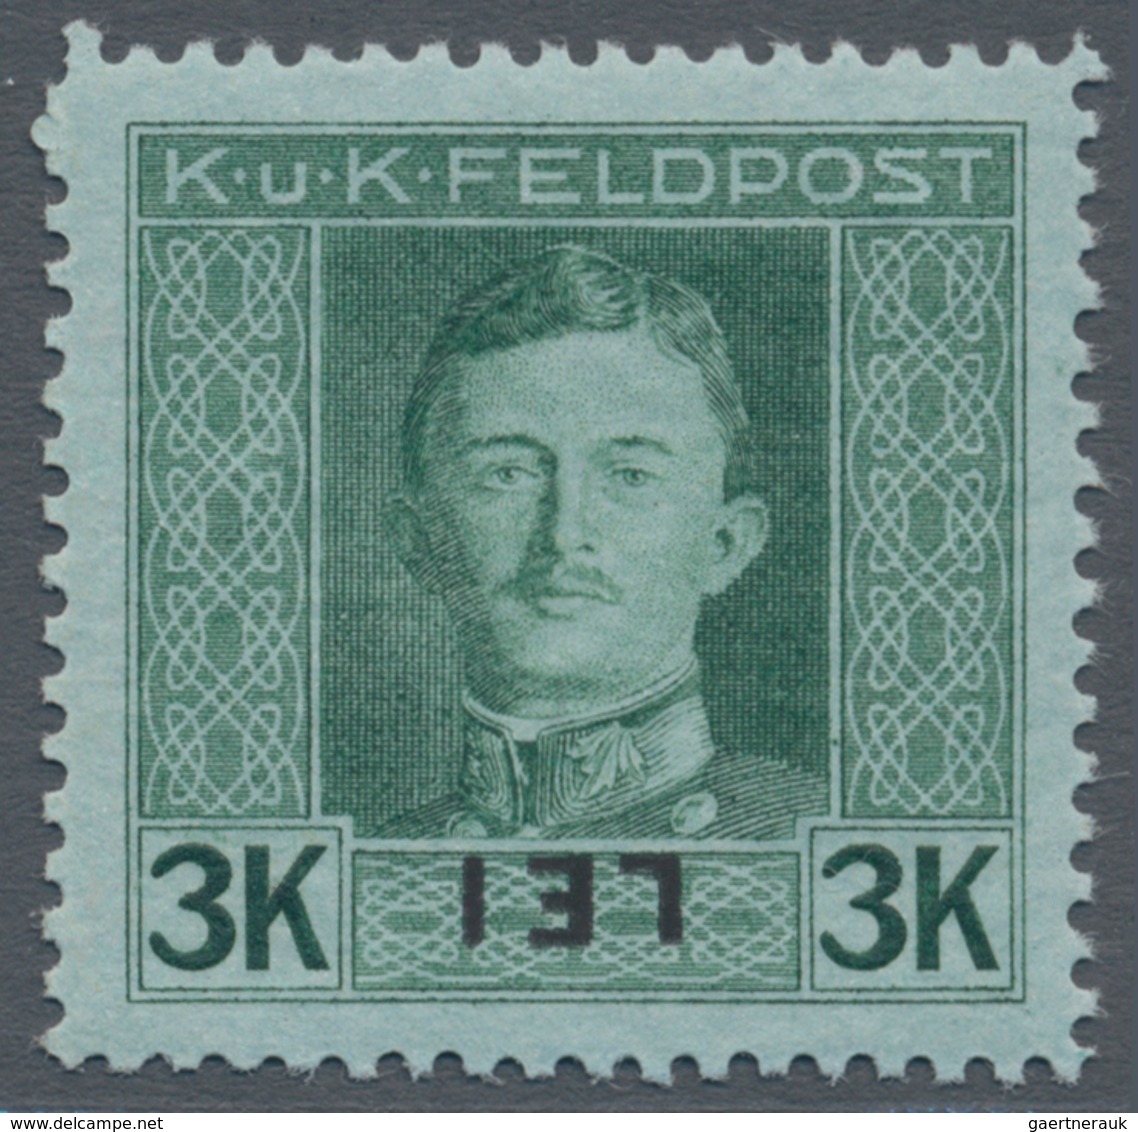 Österreichisch-Ungarische Feldpost - Rumänien: 1917, Siebzehn Marken Kaiser Karl 3 H bis 4 K mit KOP